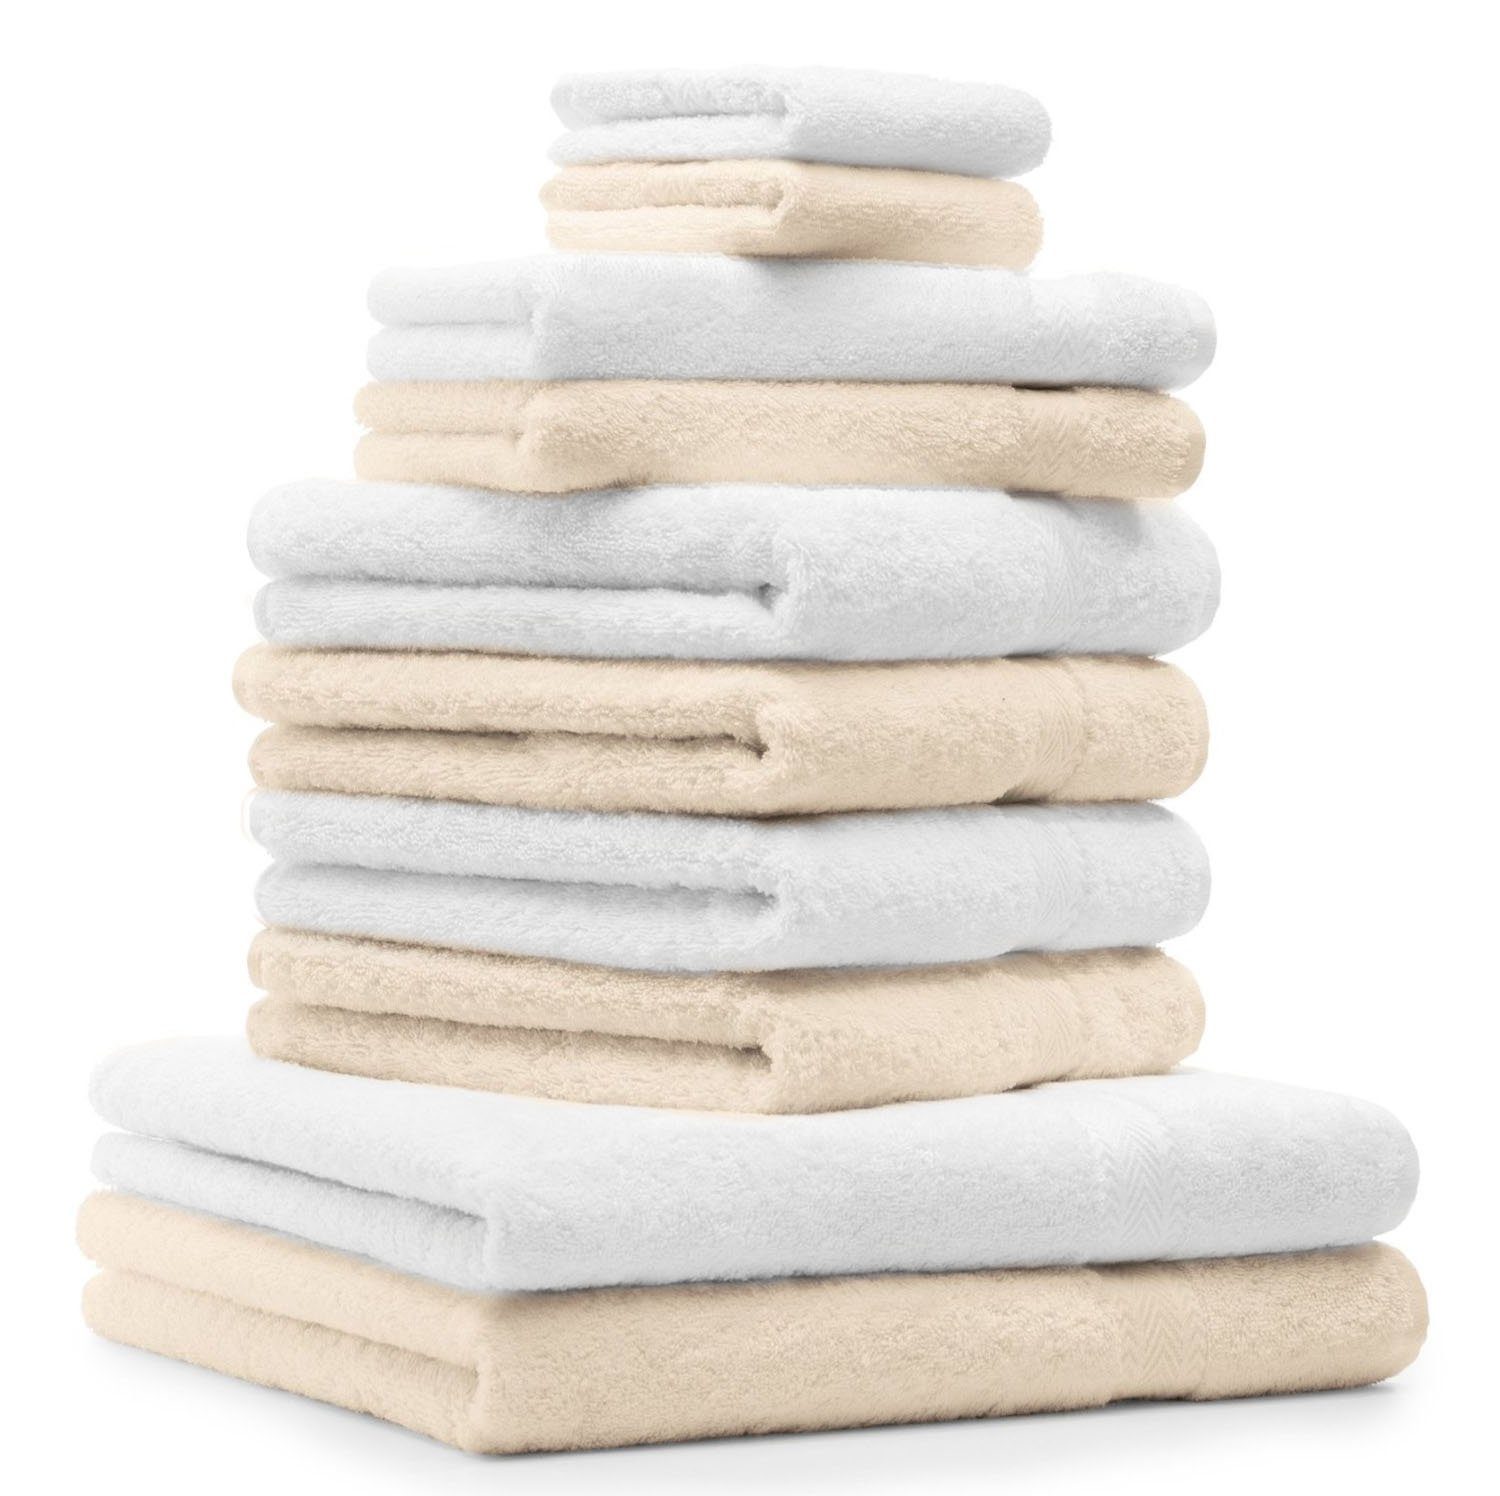 Betz Handtuch Set 10-TLG. Handtuch-Set und Classic 100% Baumwolle weiß, beige Farbe